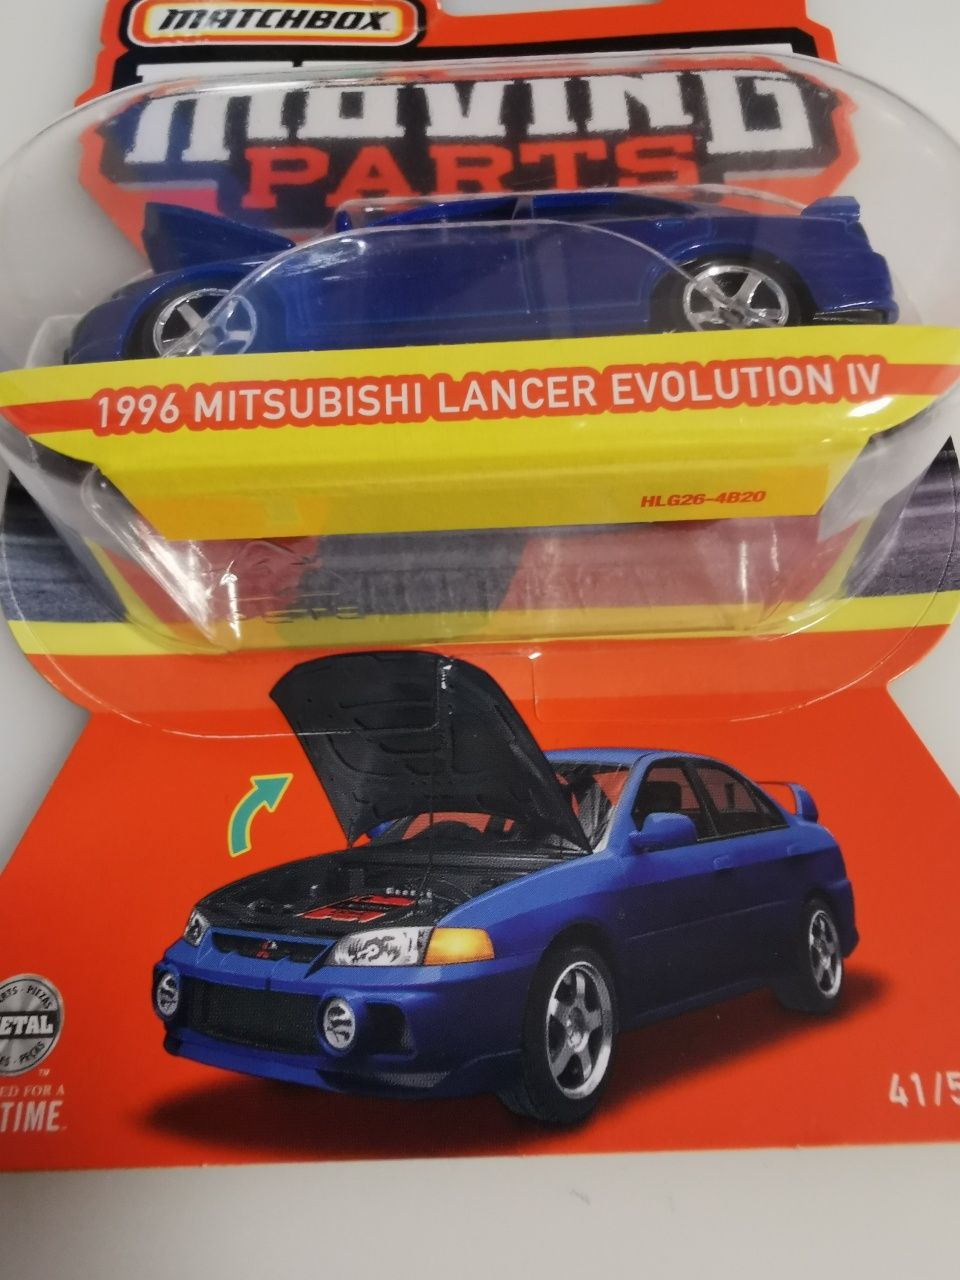 Matchbox 1996 Mitsubishi Lancer Evolution IV